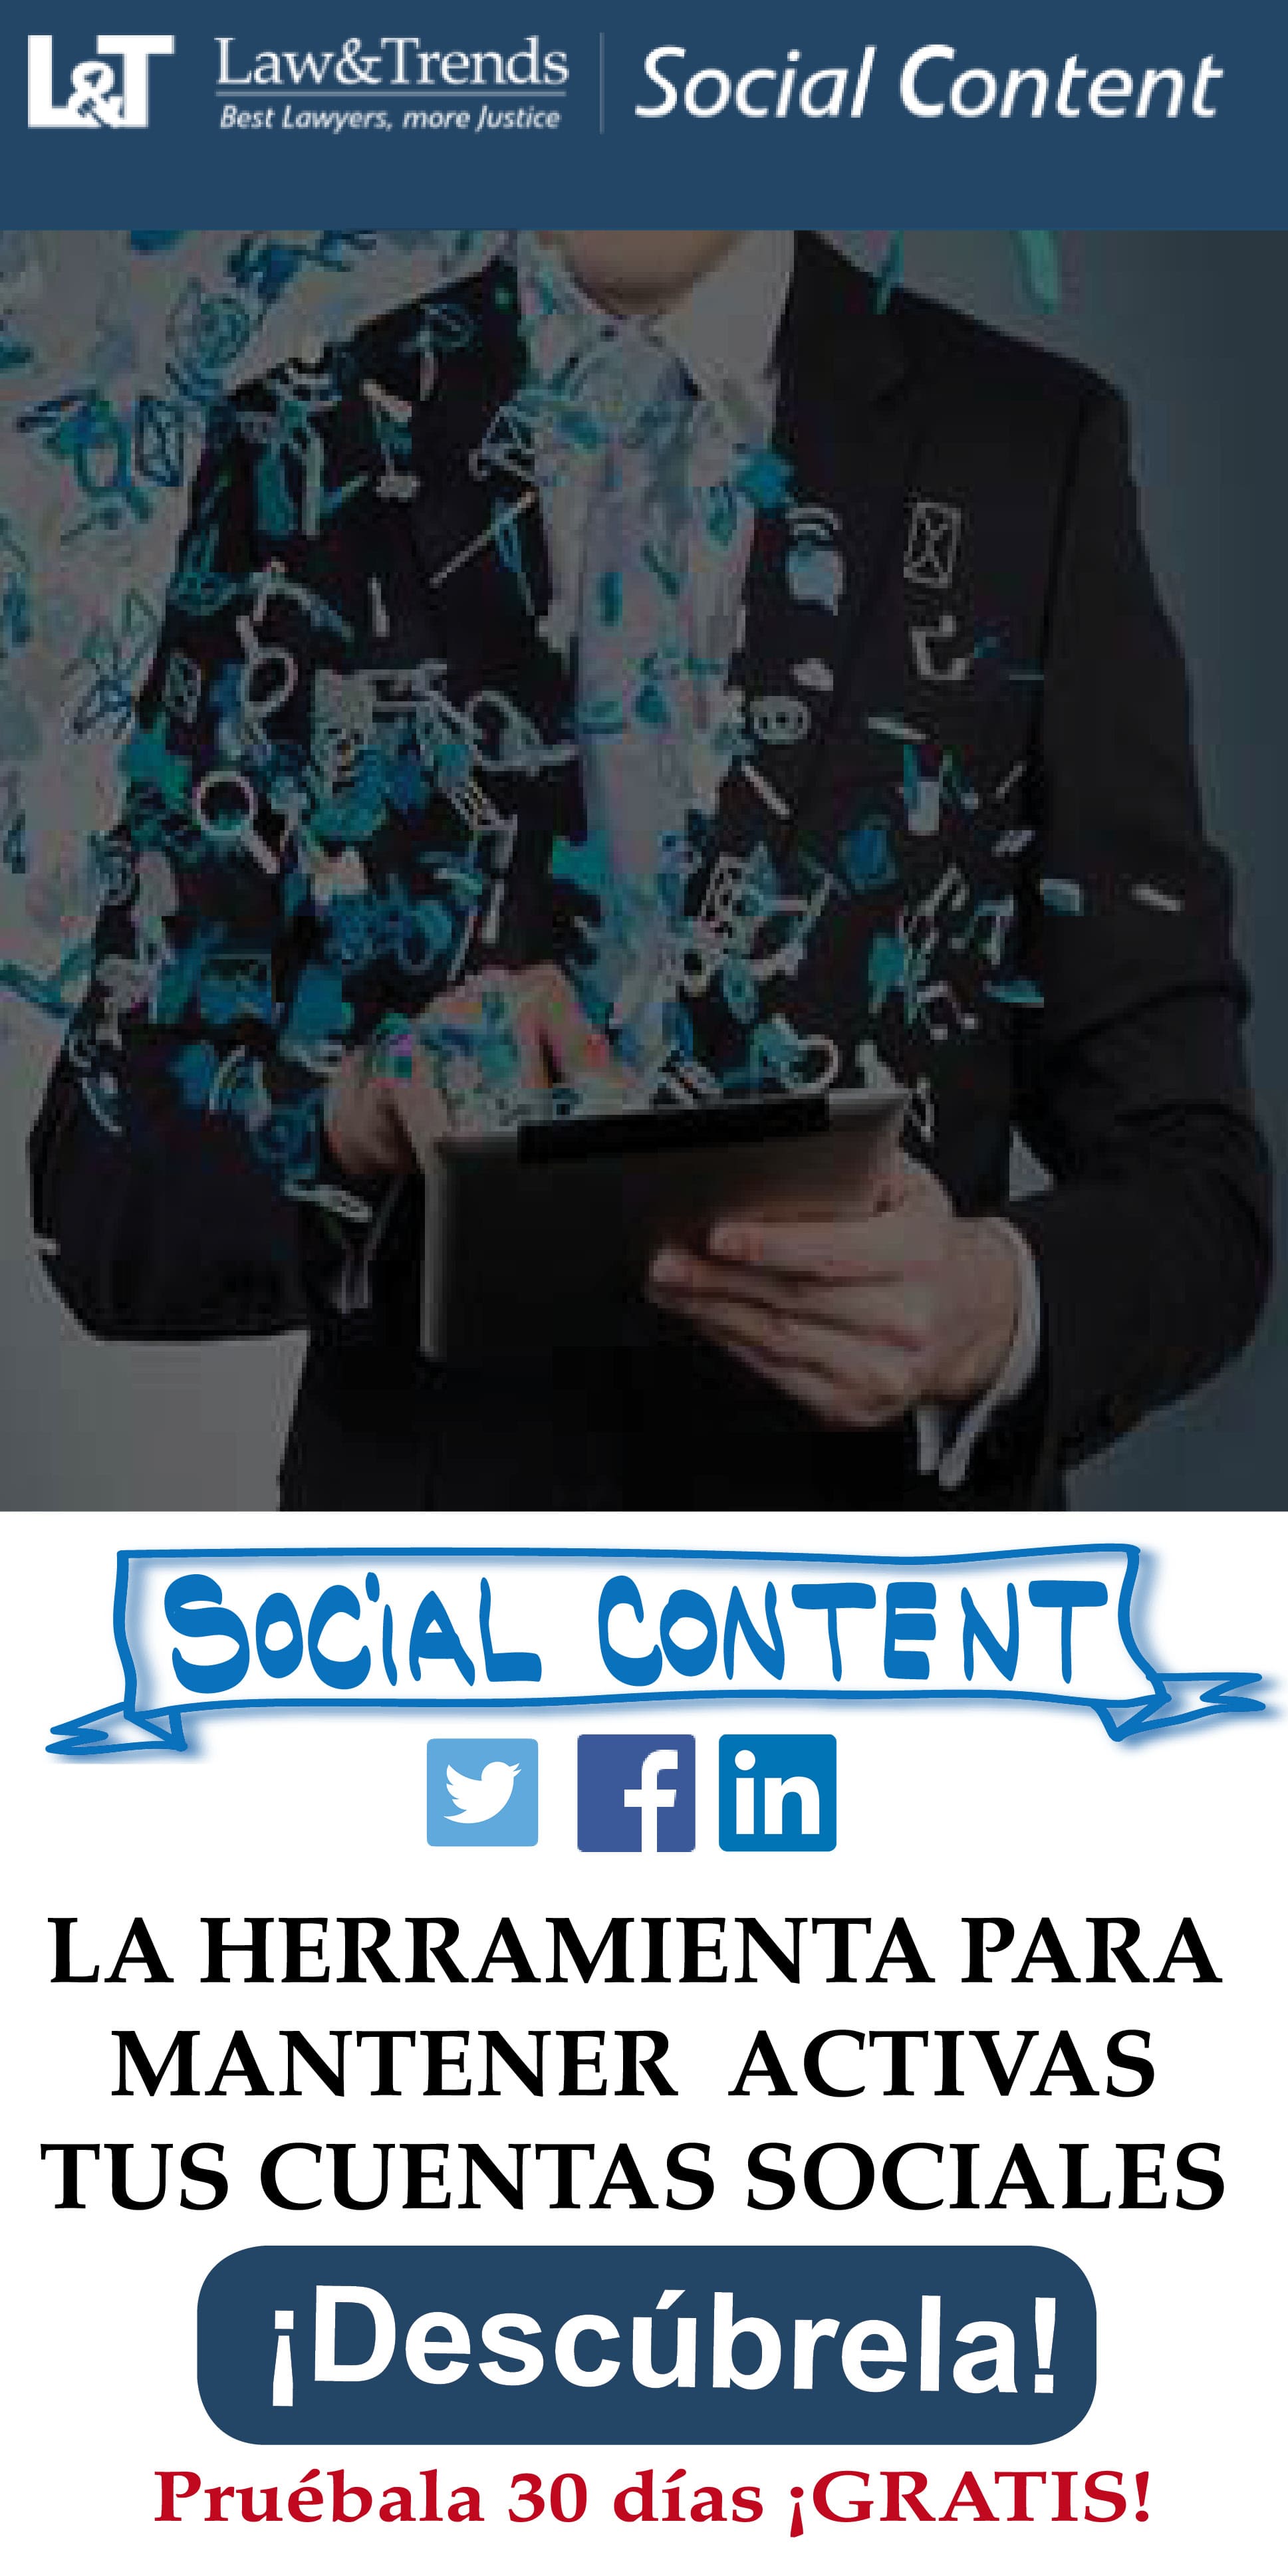 Social content es el servicio de redes sociales de Law&Trends para despachos de abogados y profesionales jurdicos
